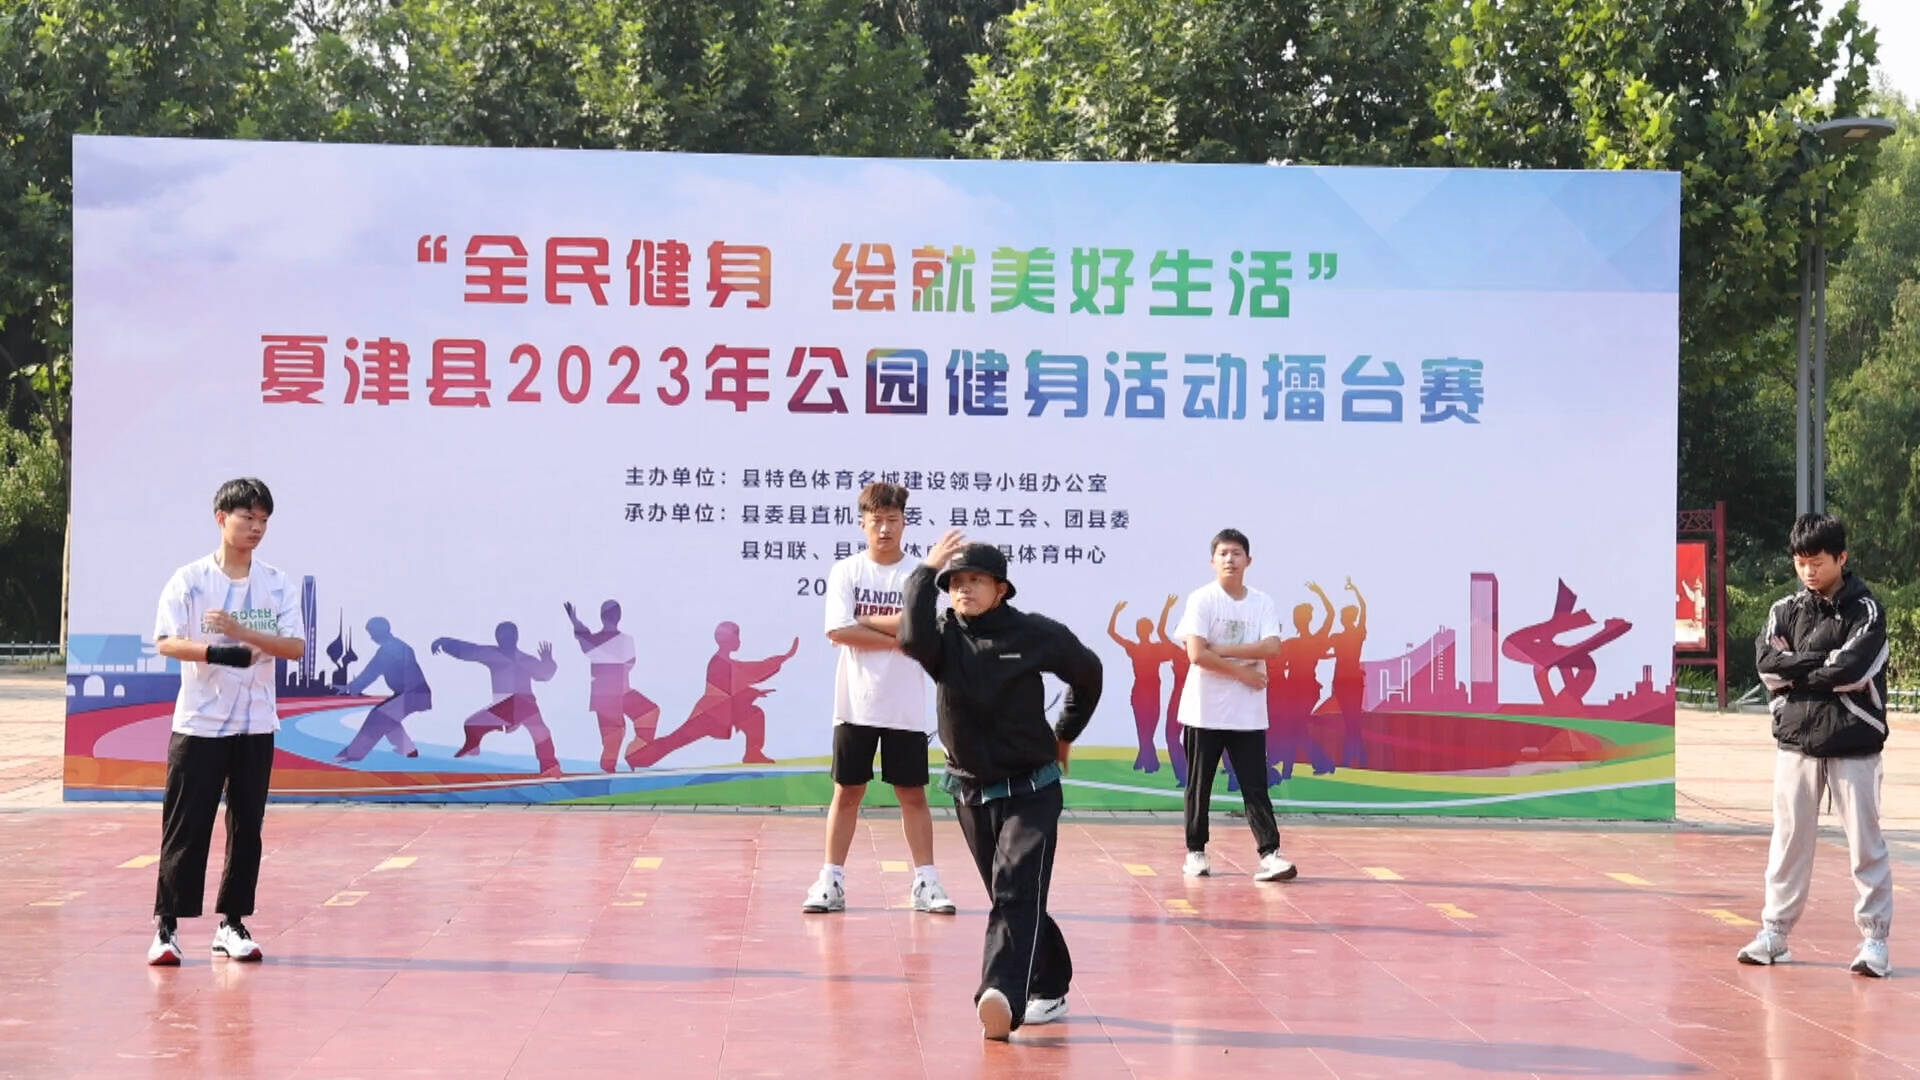 “全民健身绘就美好生活” 夏津县2023年公园健身活动擂台赛拉开帷幕